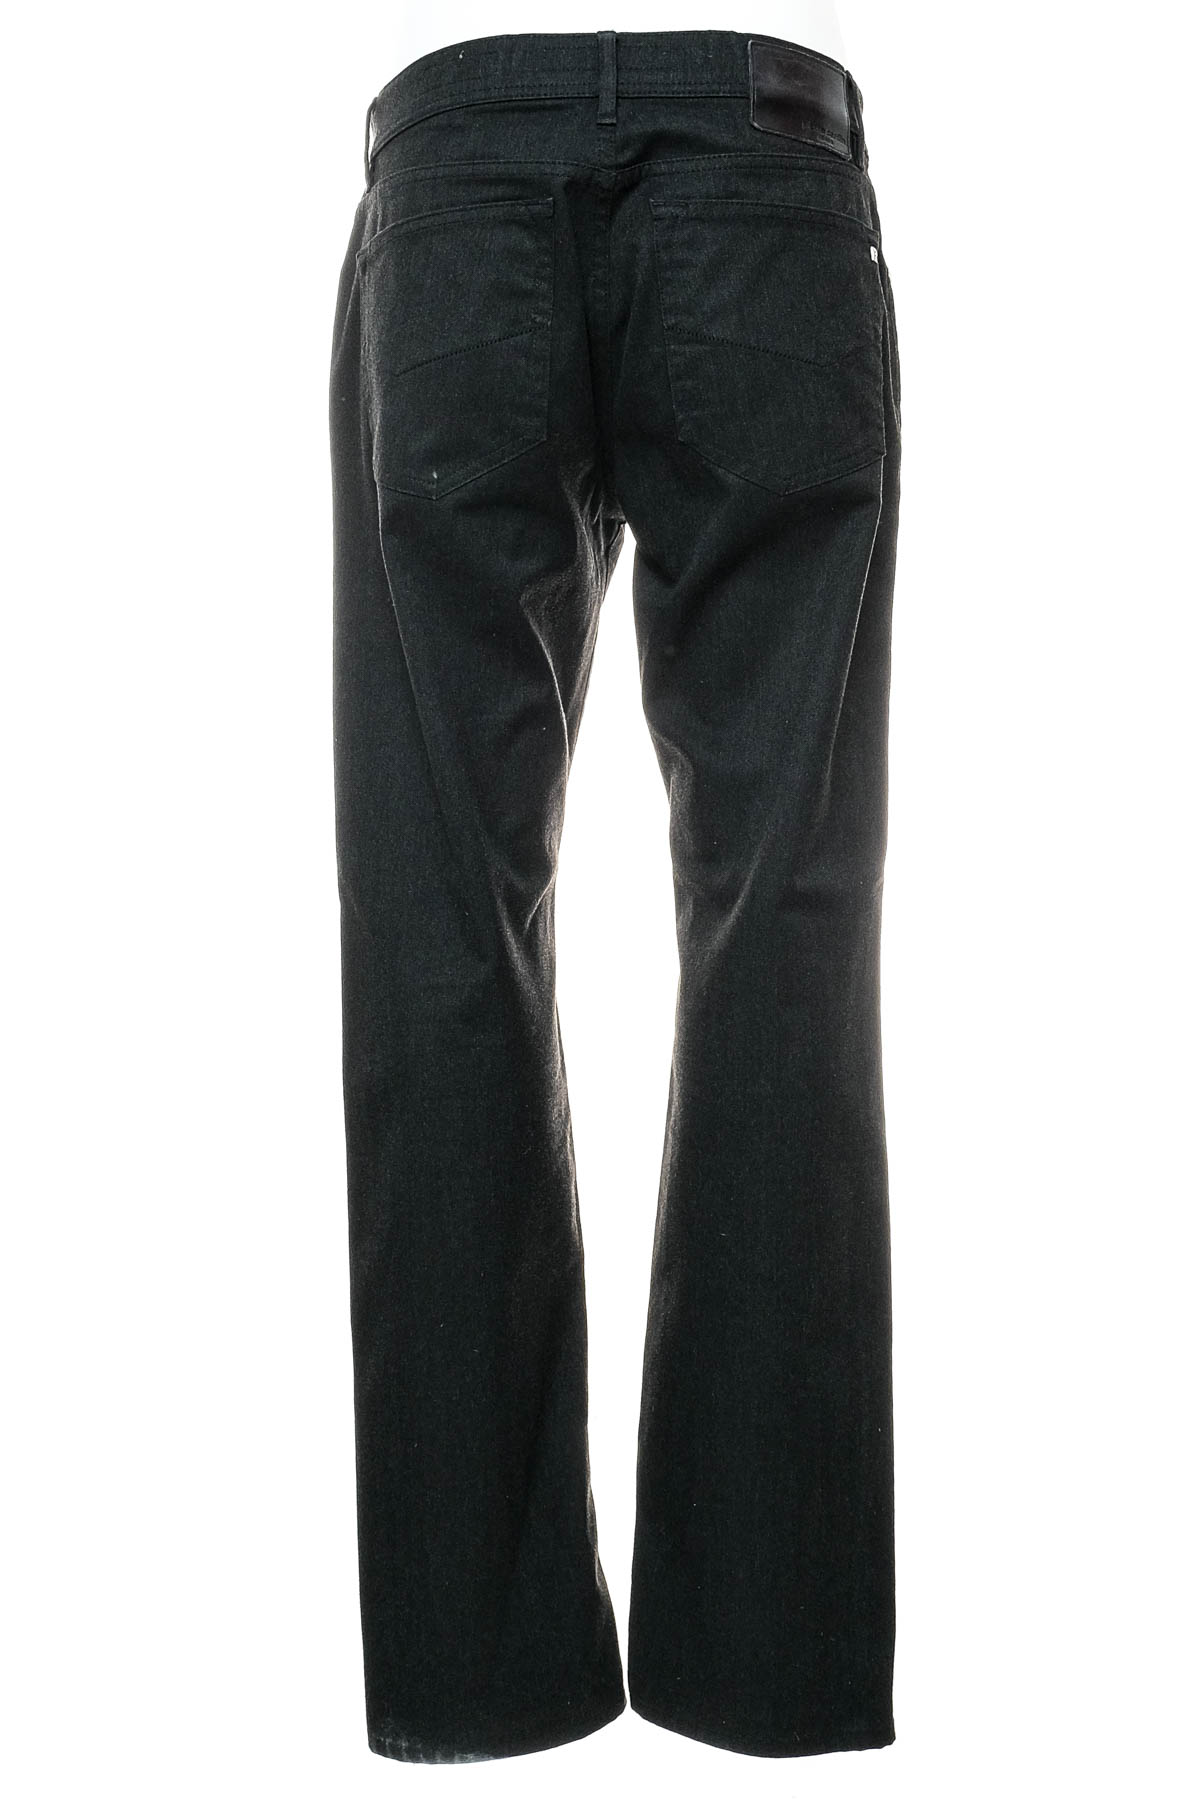 Ανδρικά παντελόνια - Pierre Cardin - 1